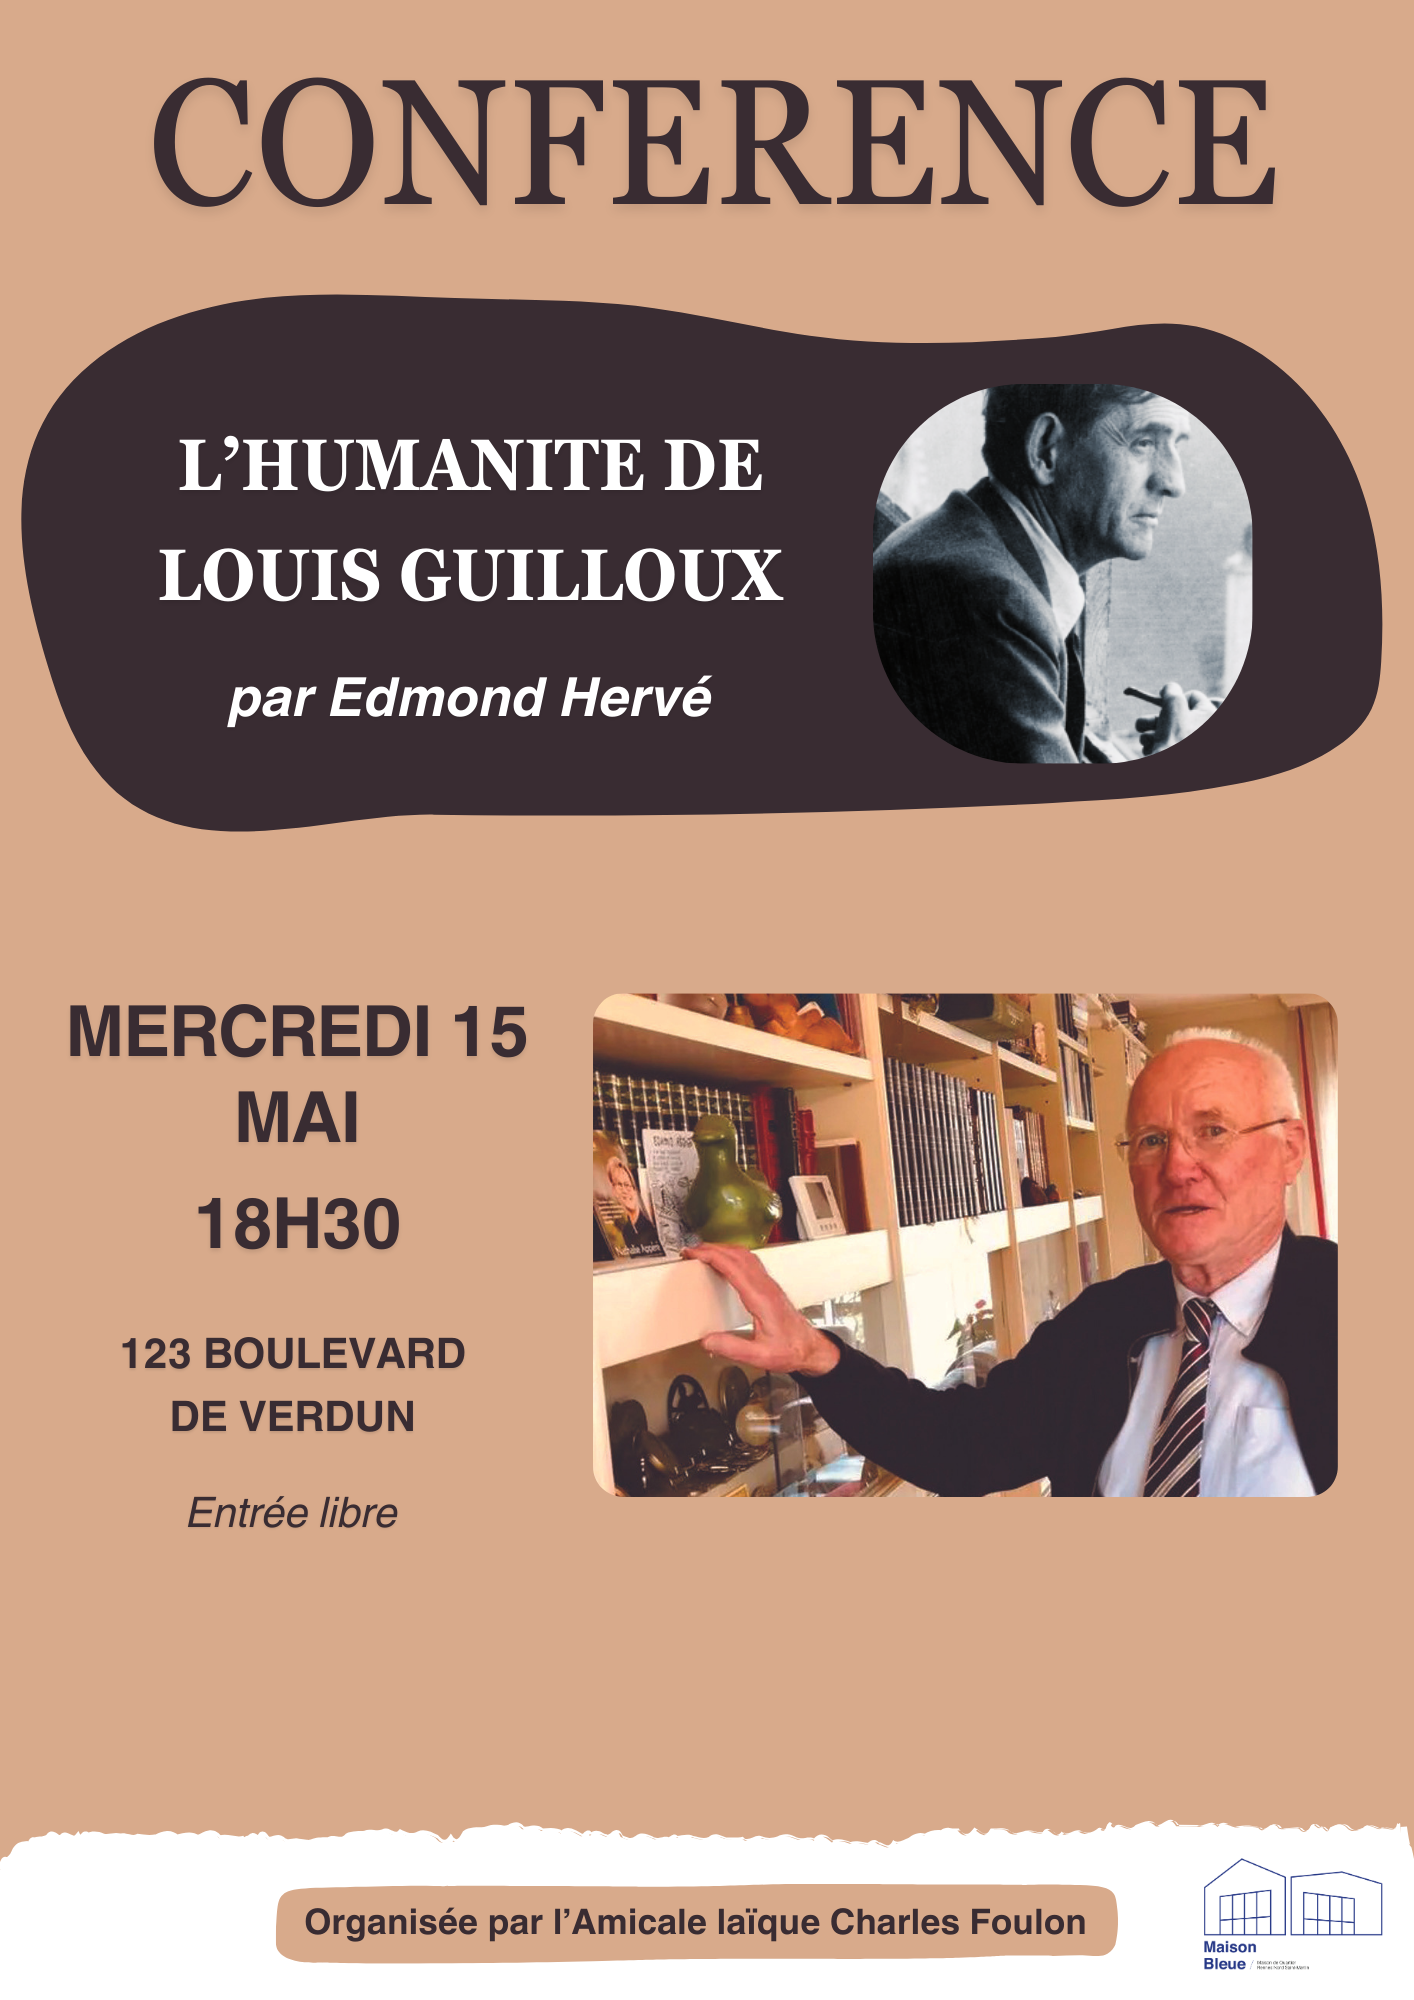 [Conférence] – L’humanité de Louis Guilloux, par Edmond Hervé @ La Maison Bleue | Rennes | Bretagne | France